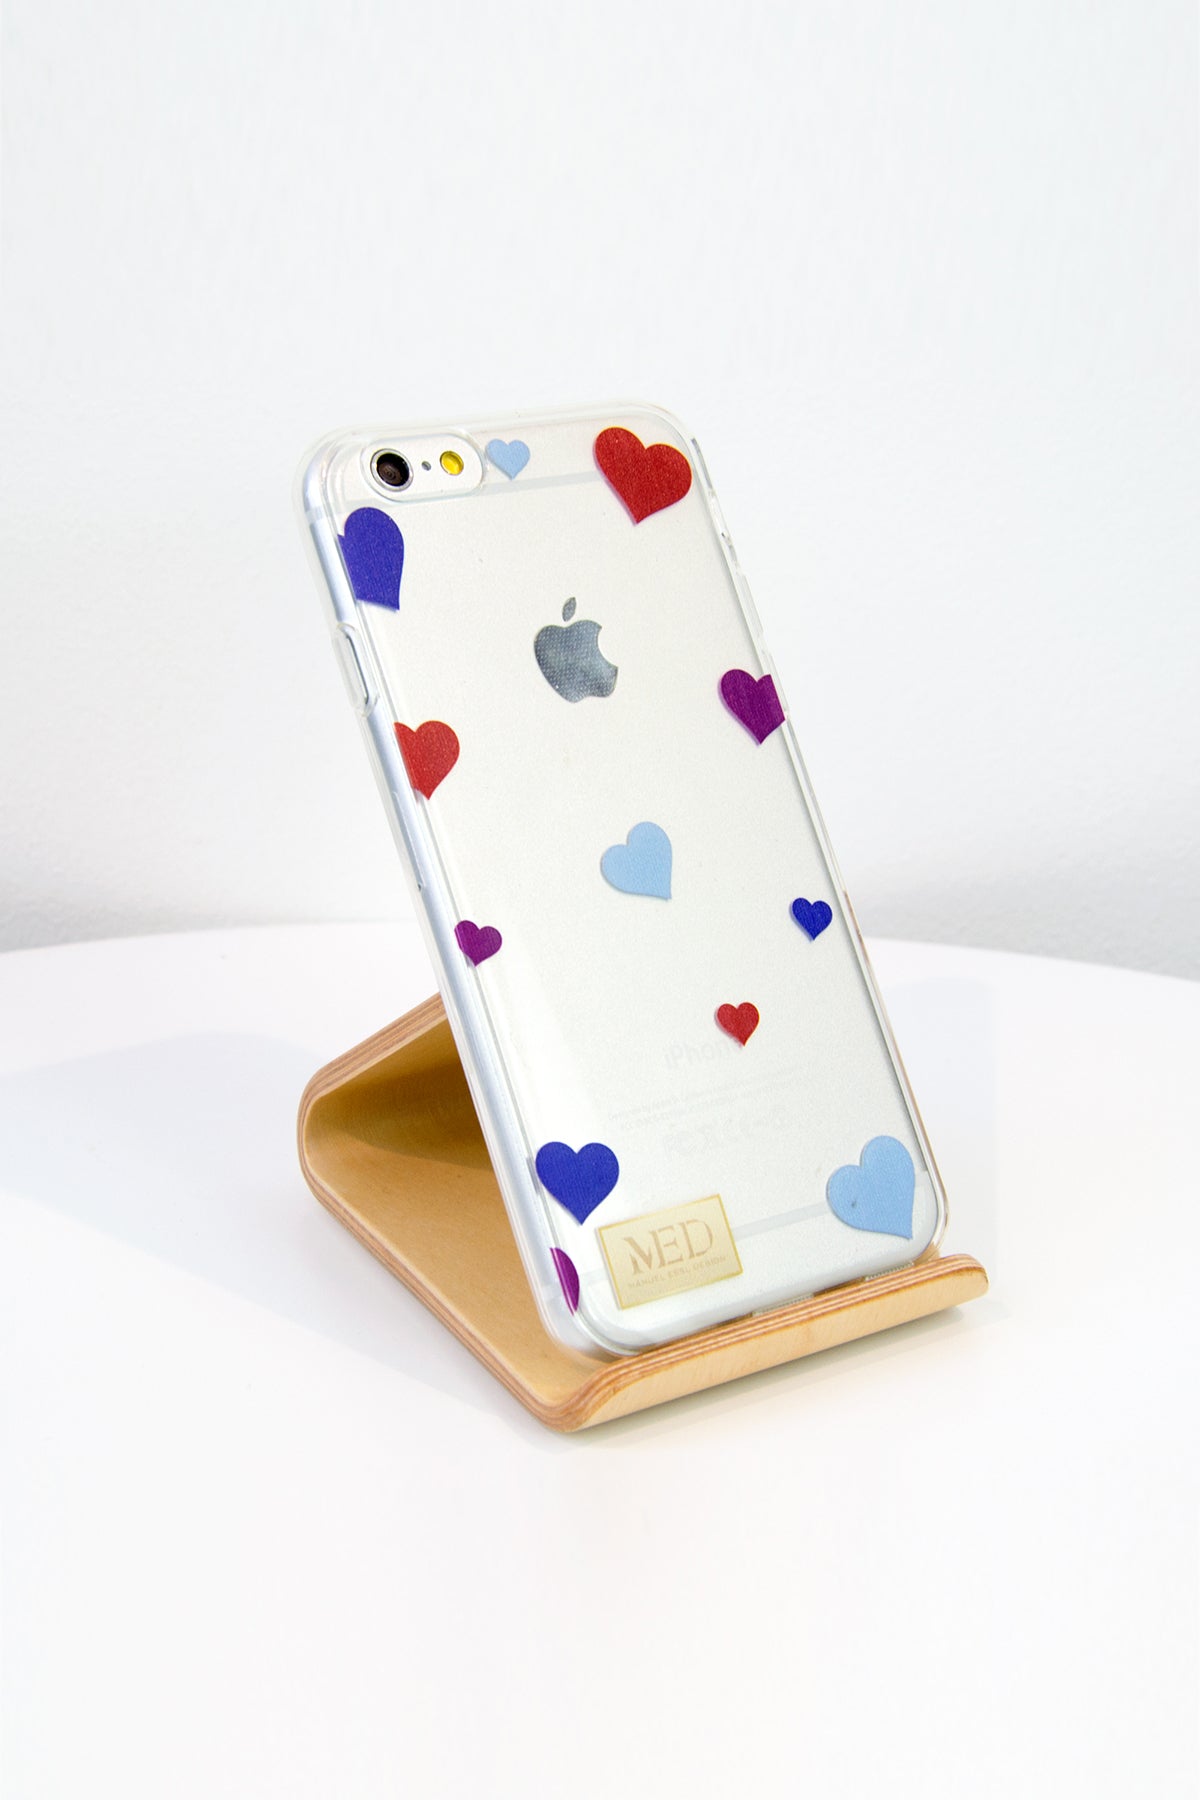 Phone Case "LOVE" - Manuel Essl Design